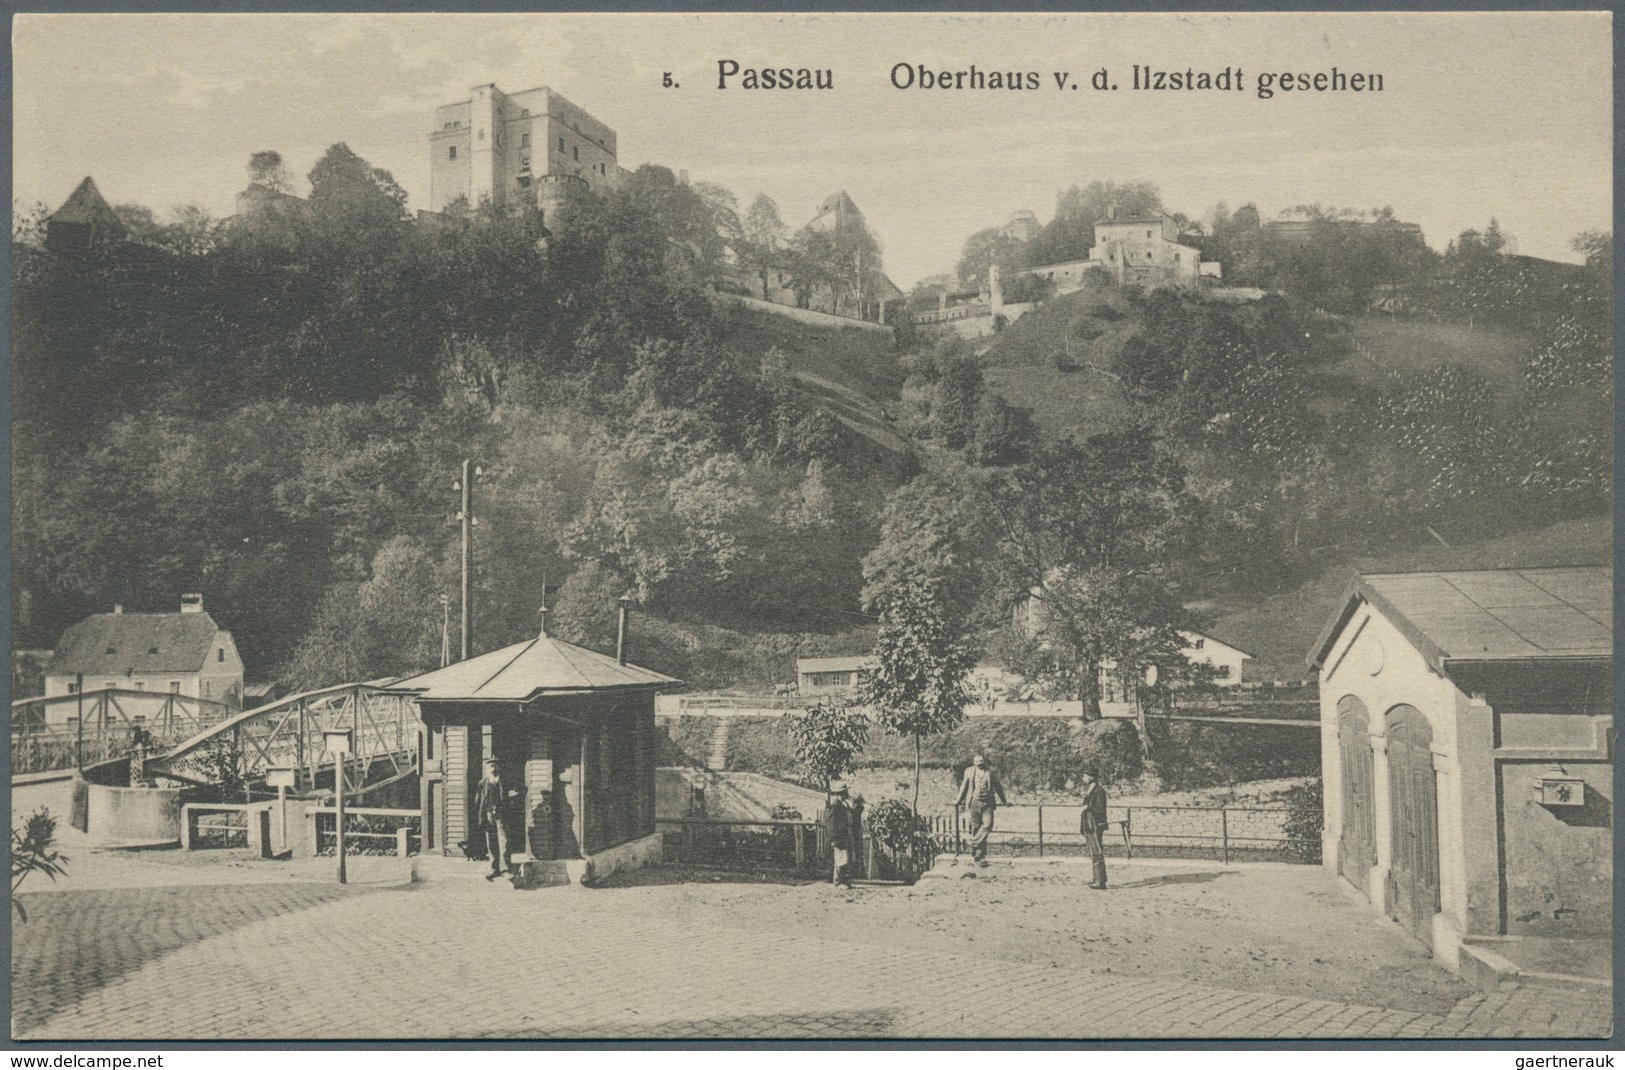 21721 Ansichtskarten: Bayern: PASSAU Stadt (alte PLZ 8390), eine reizvolle Partie mit über 350 Ansichtskar